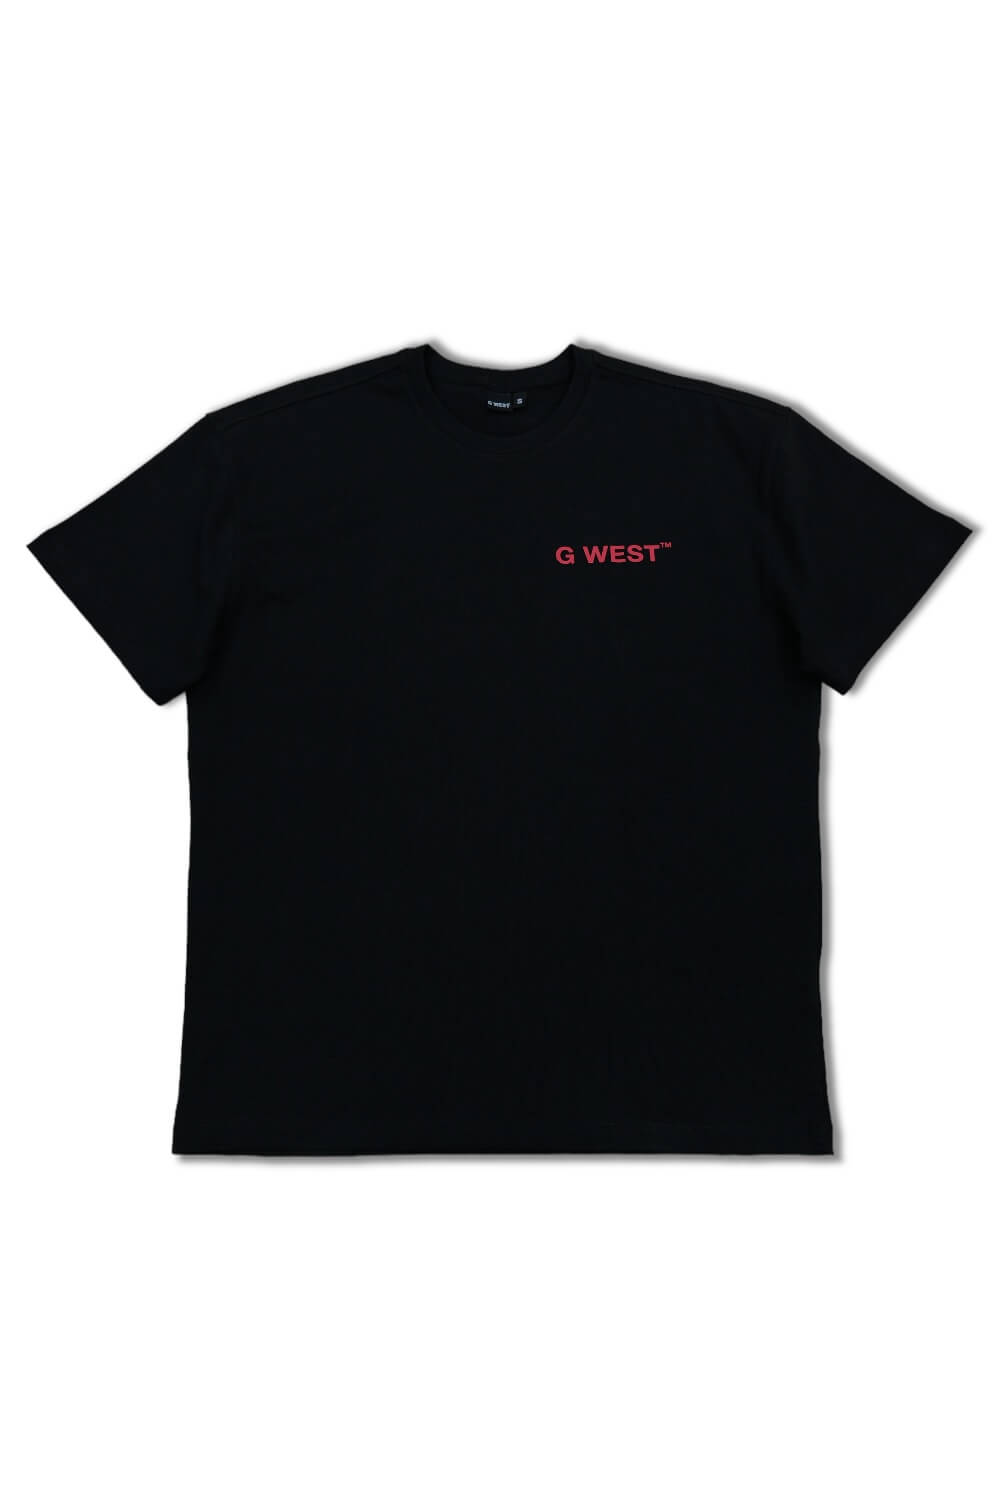 G West Skelleton Roses T-shirt -Black